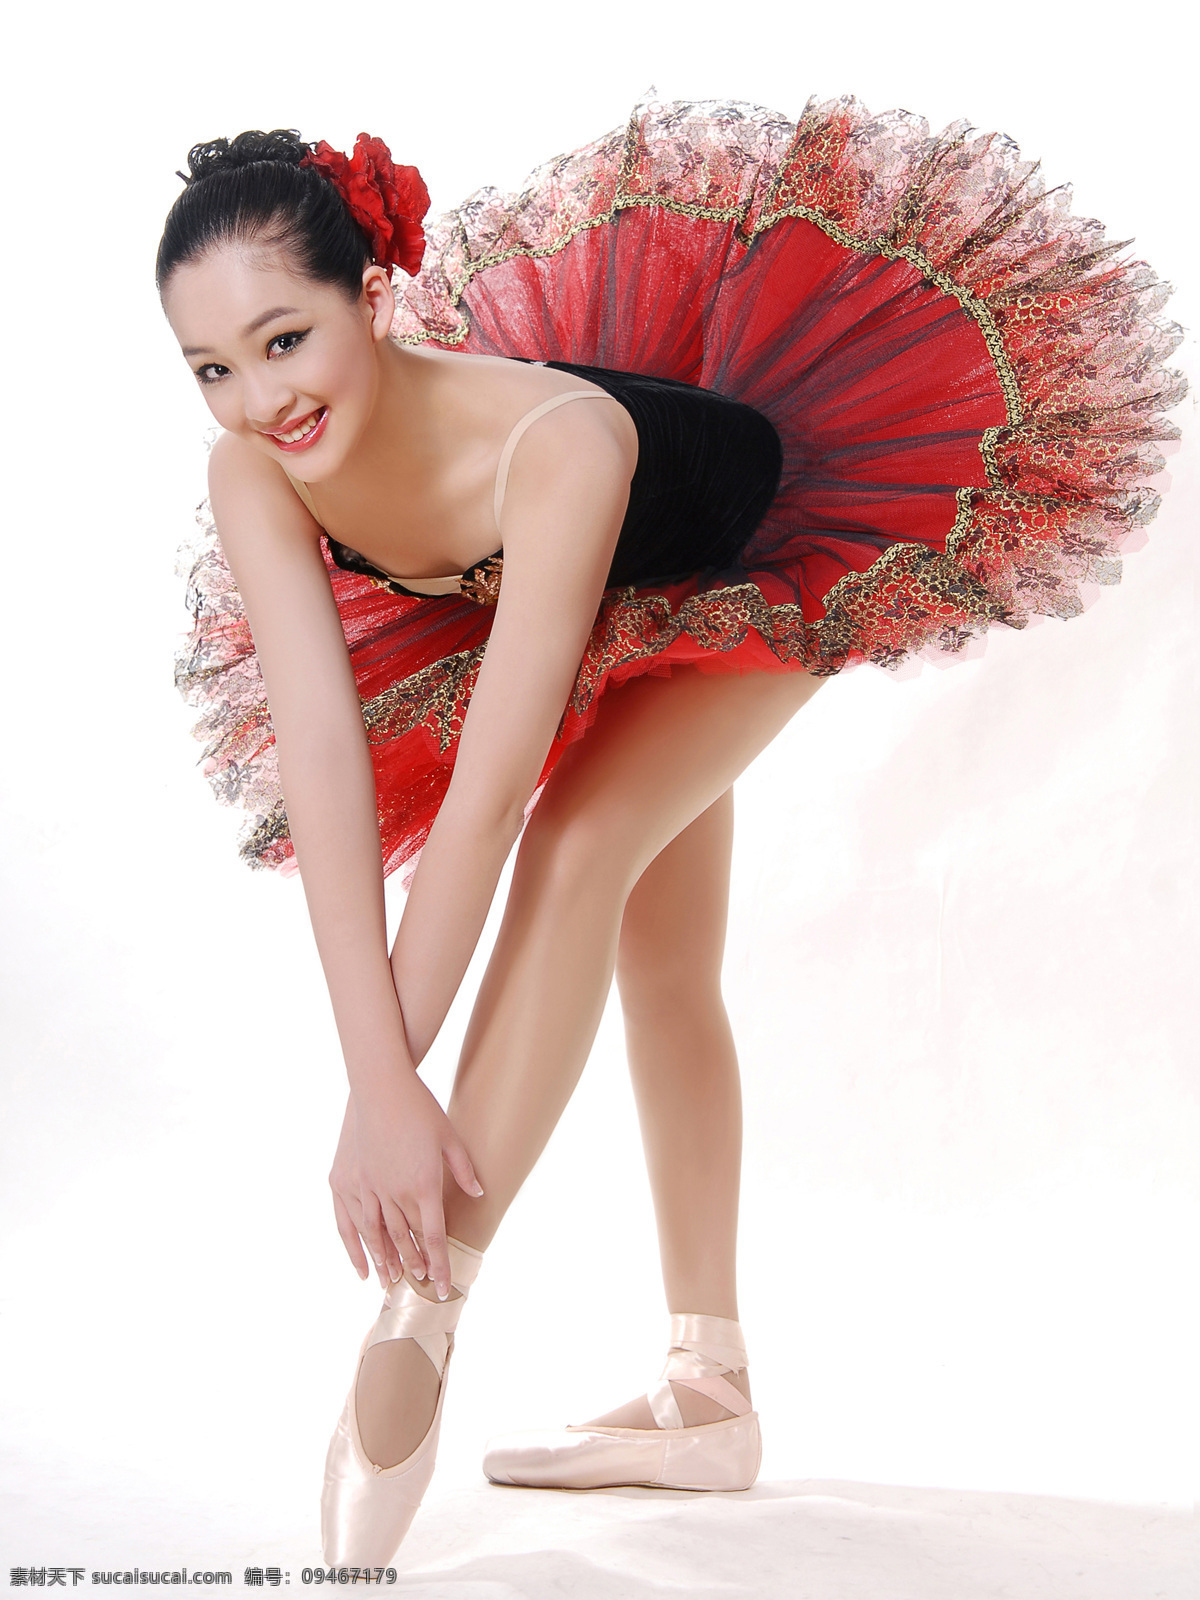 崔安娜 芭蕾装 写真 美国 华裔 小姐 冠军 明星偶像 人物图库